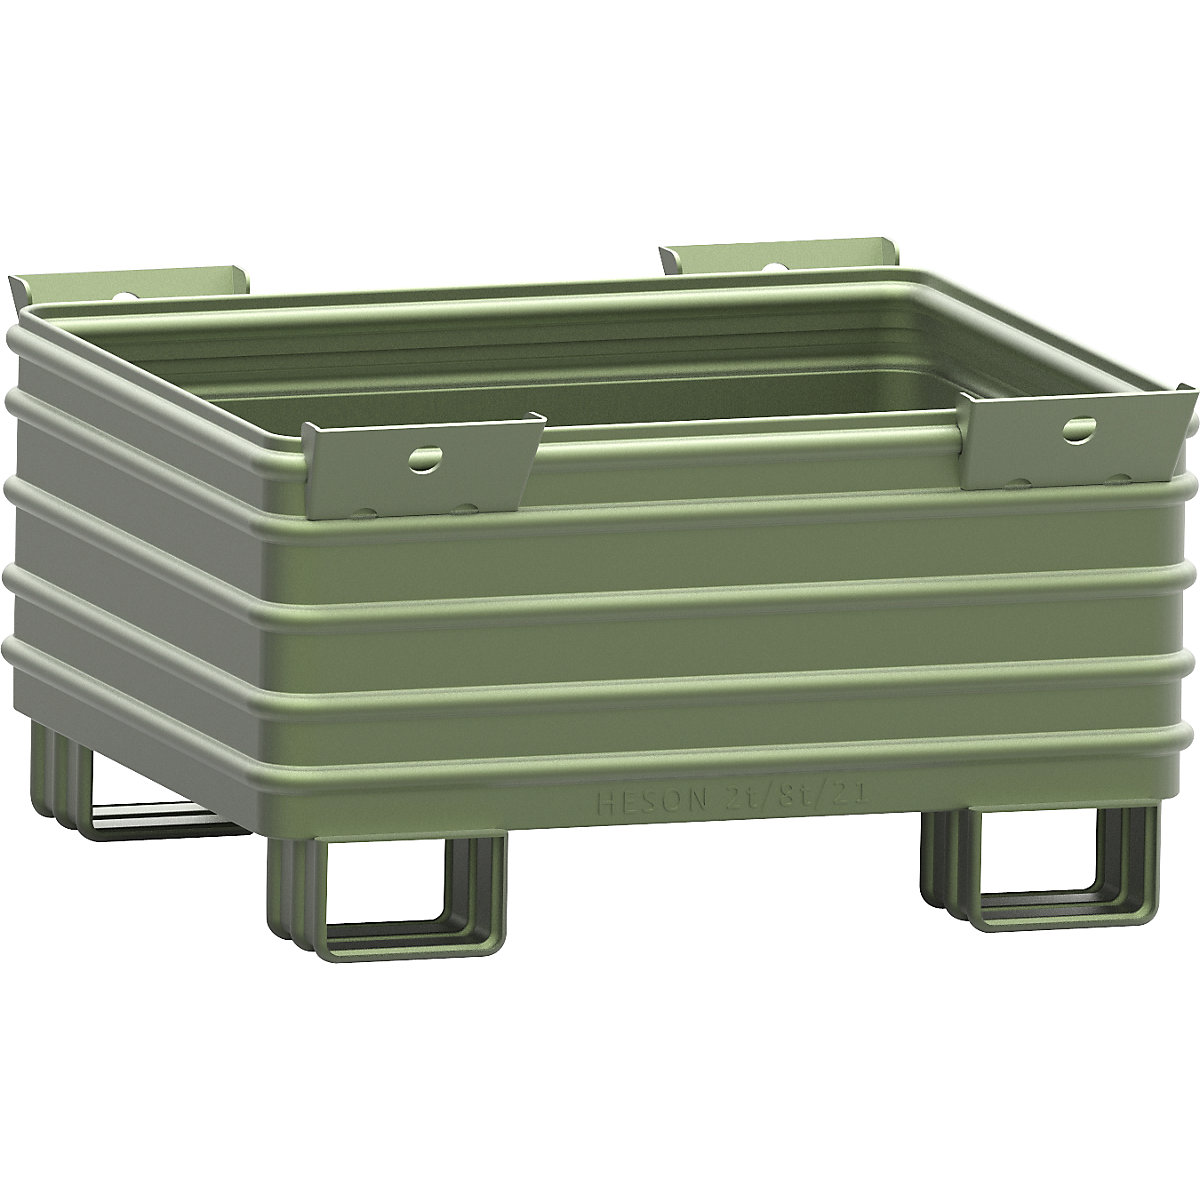 Schwerlast-Stapelbehälter Heson, BxL 1000 x 1200 mm, mit U-förmigen Füßen, grün lackiert, ab 5 Stk-6